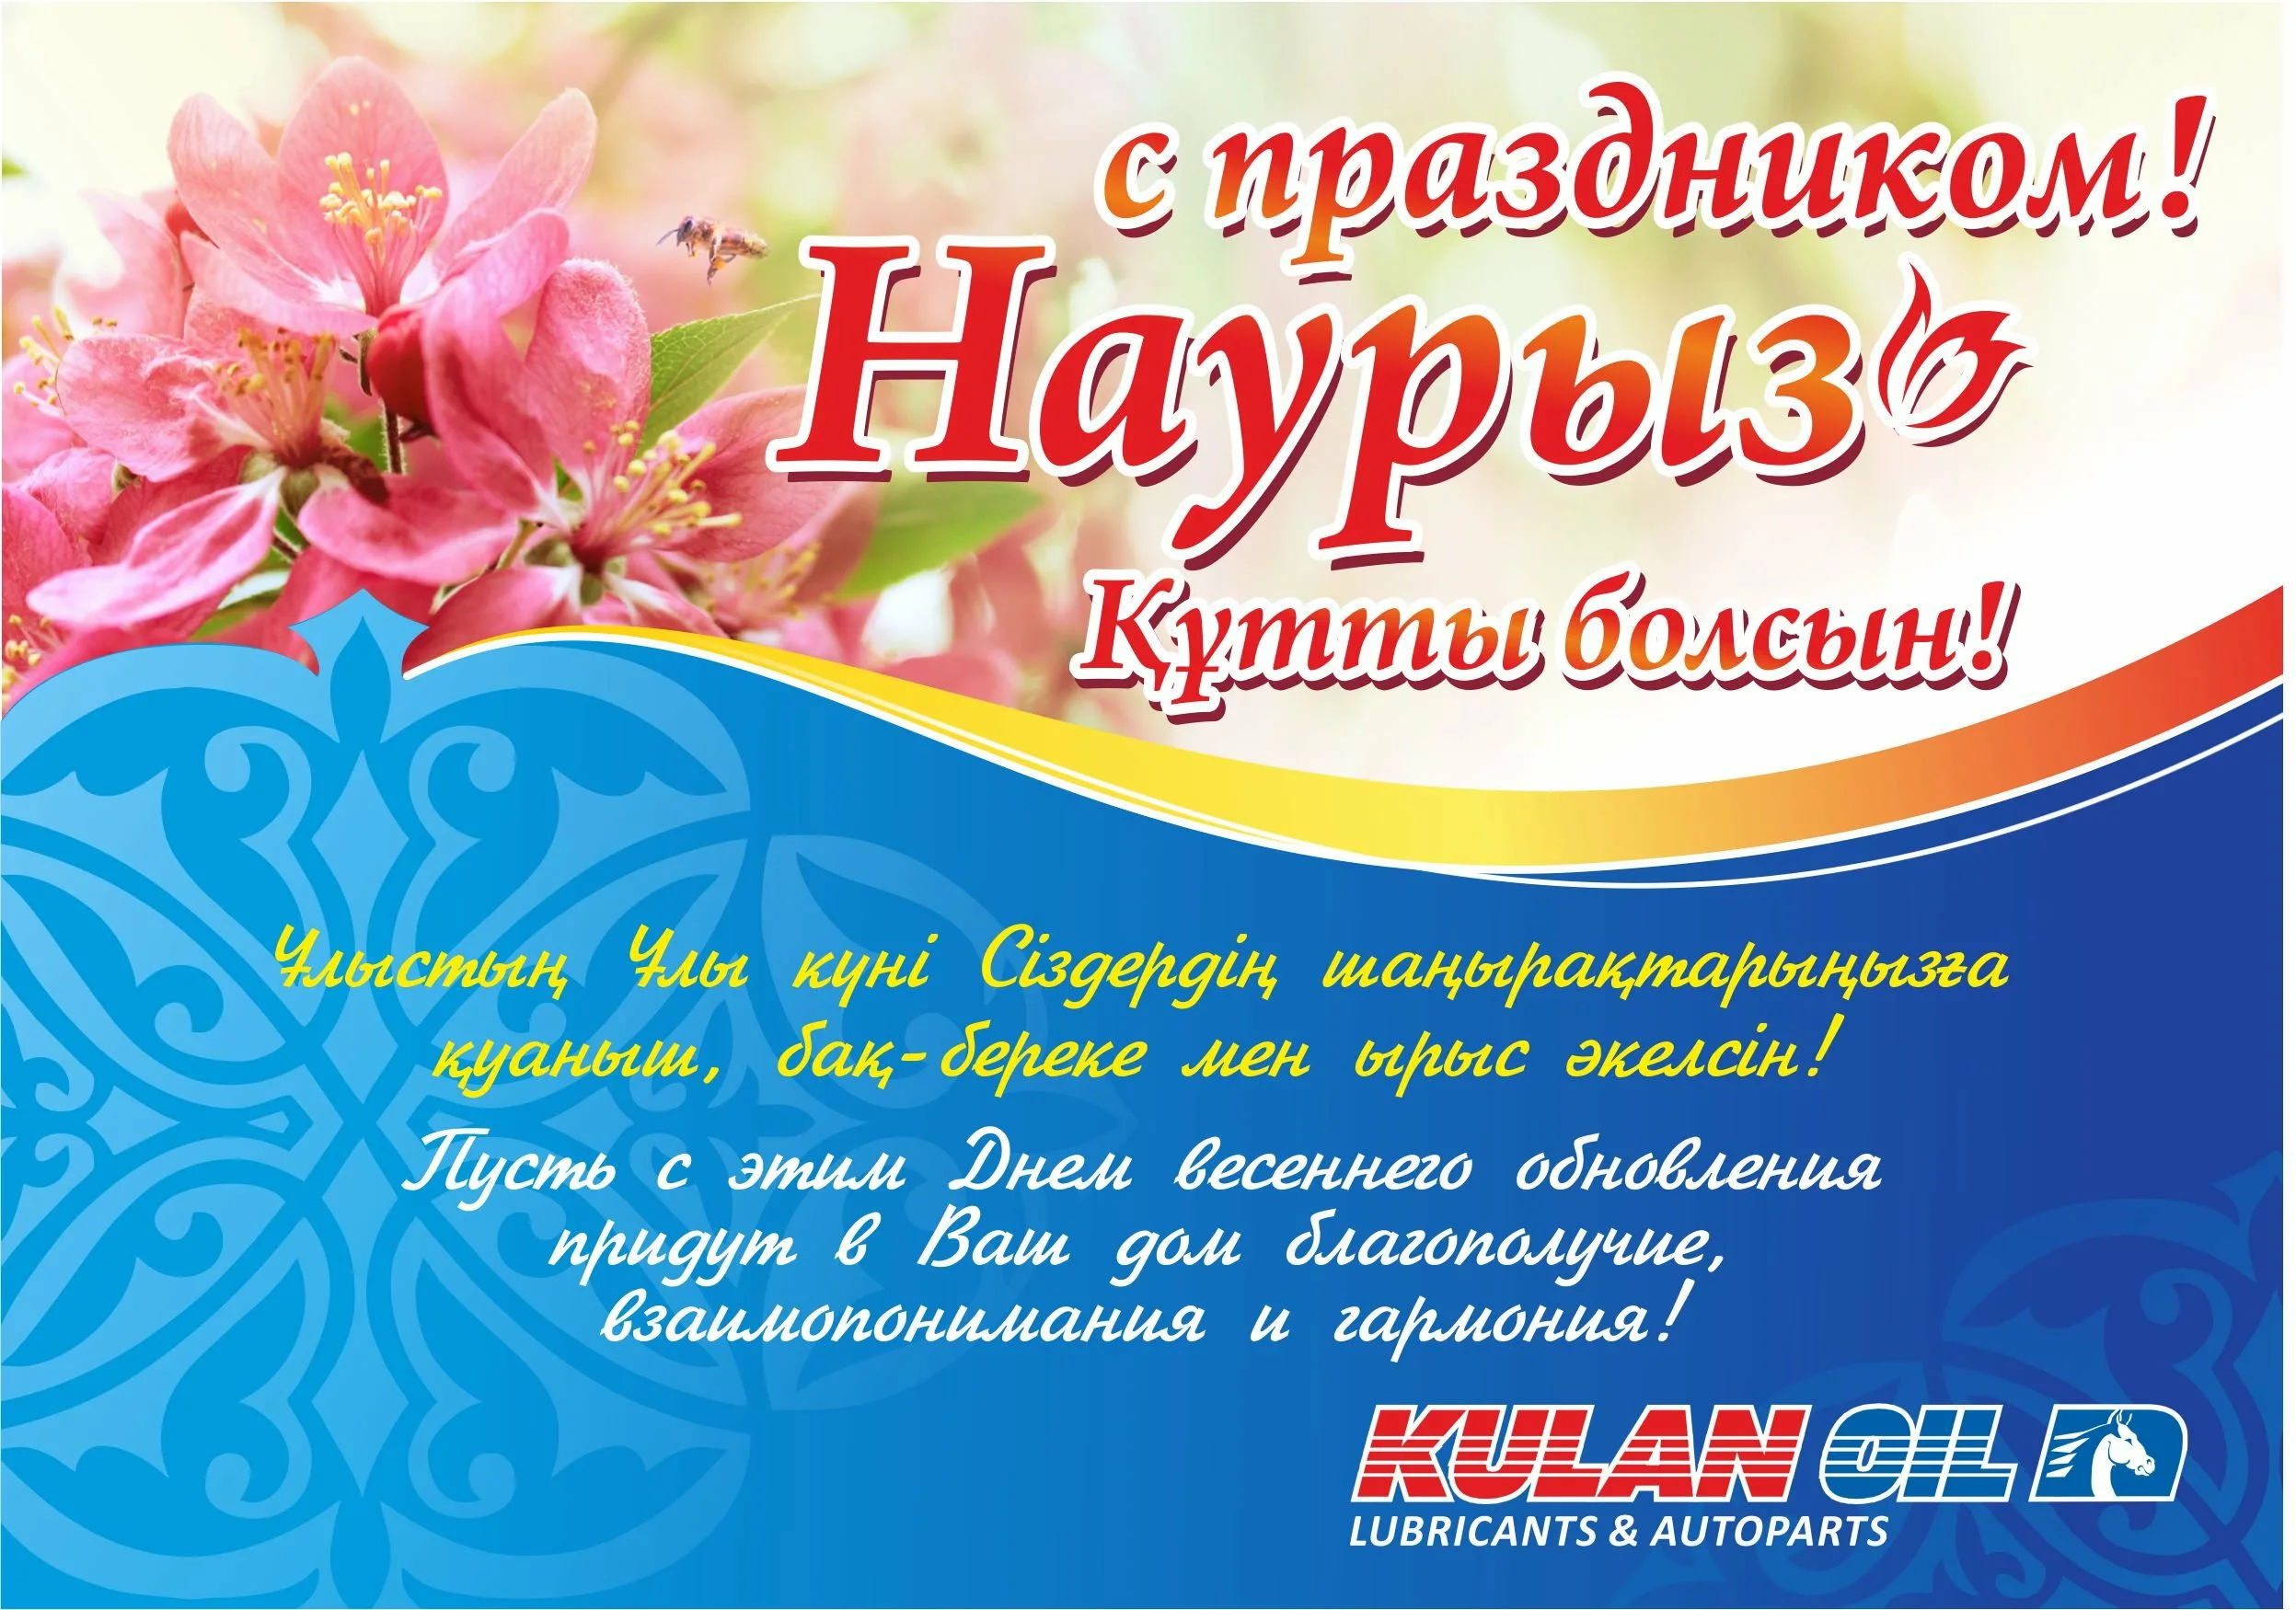 Фото Поздравления с Новым годом на казахском с переводом на русский язык #9